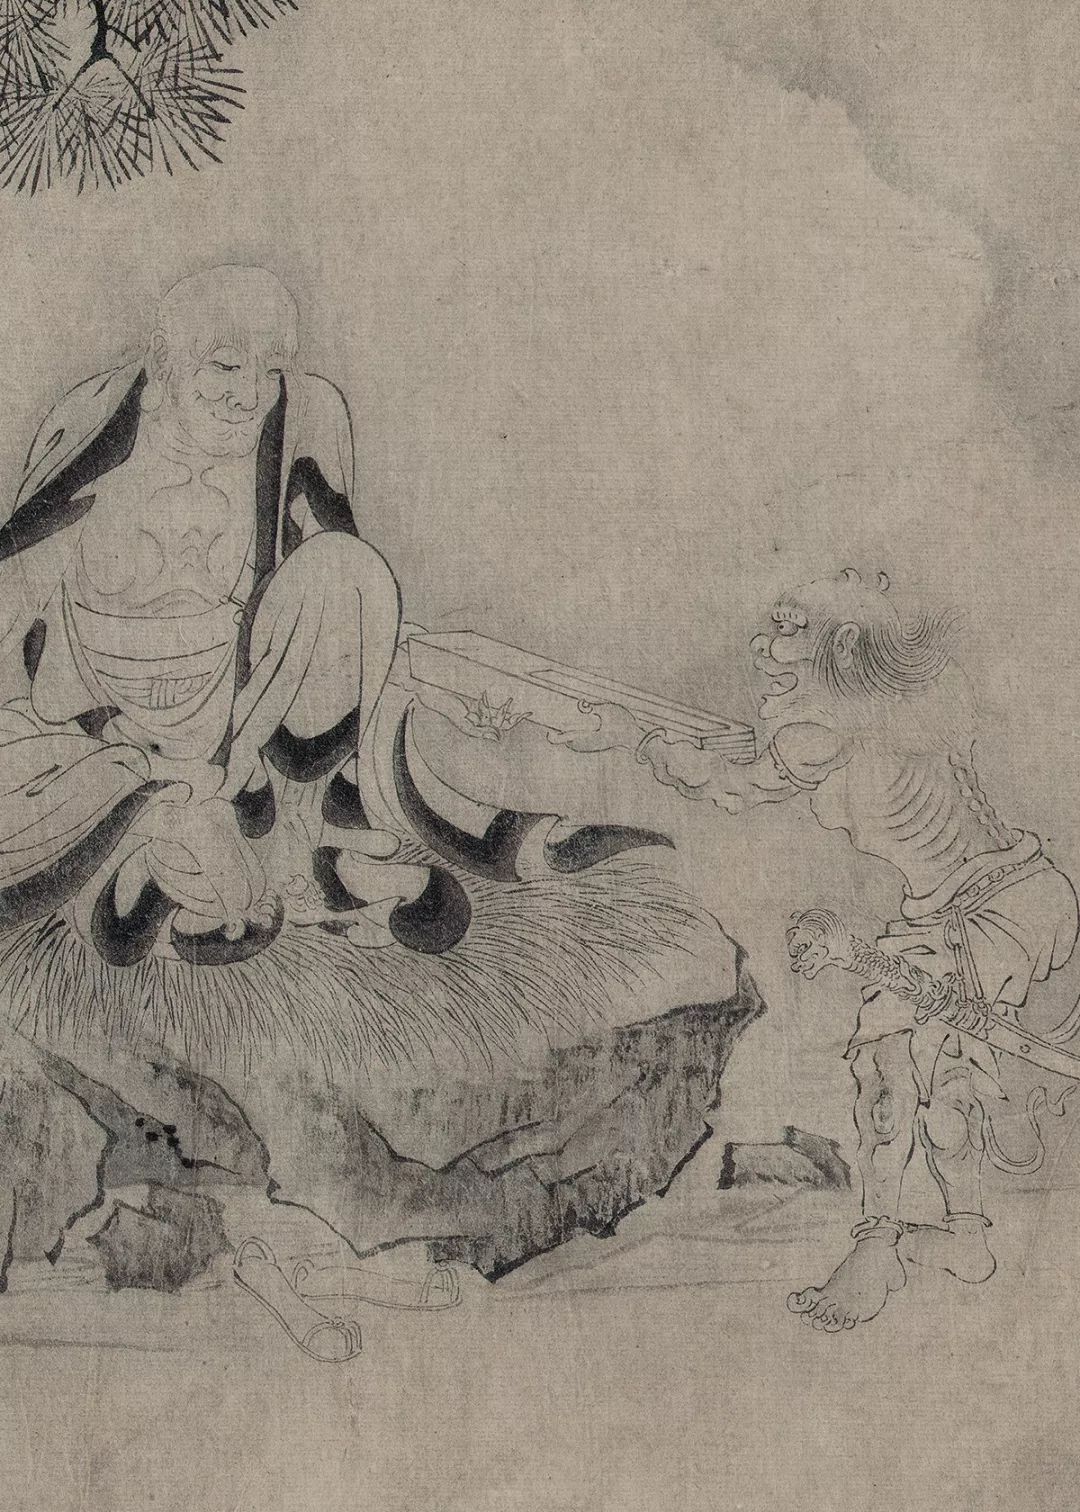 高清赏画 | 沃雪斋藏古代绘画 之 元代绘画(下)